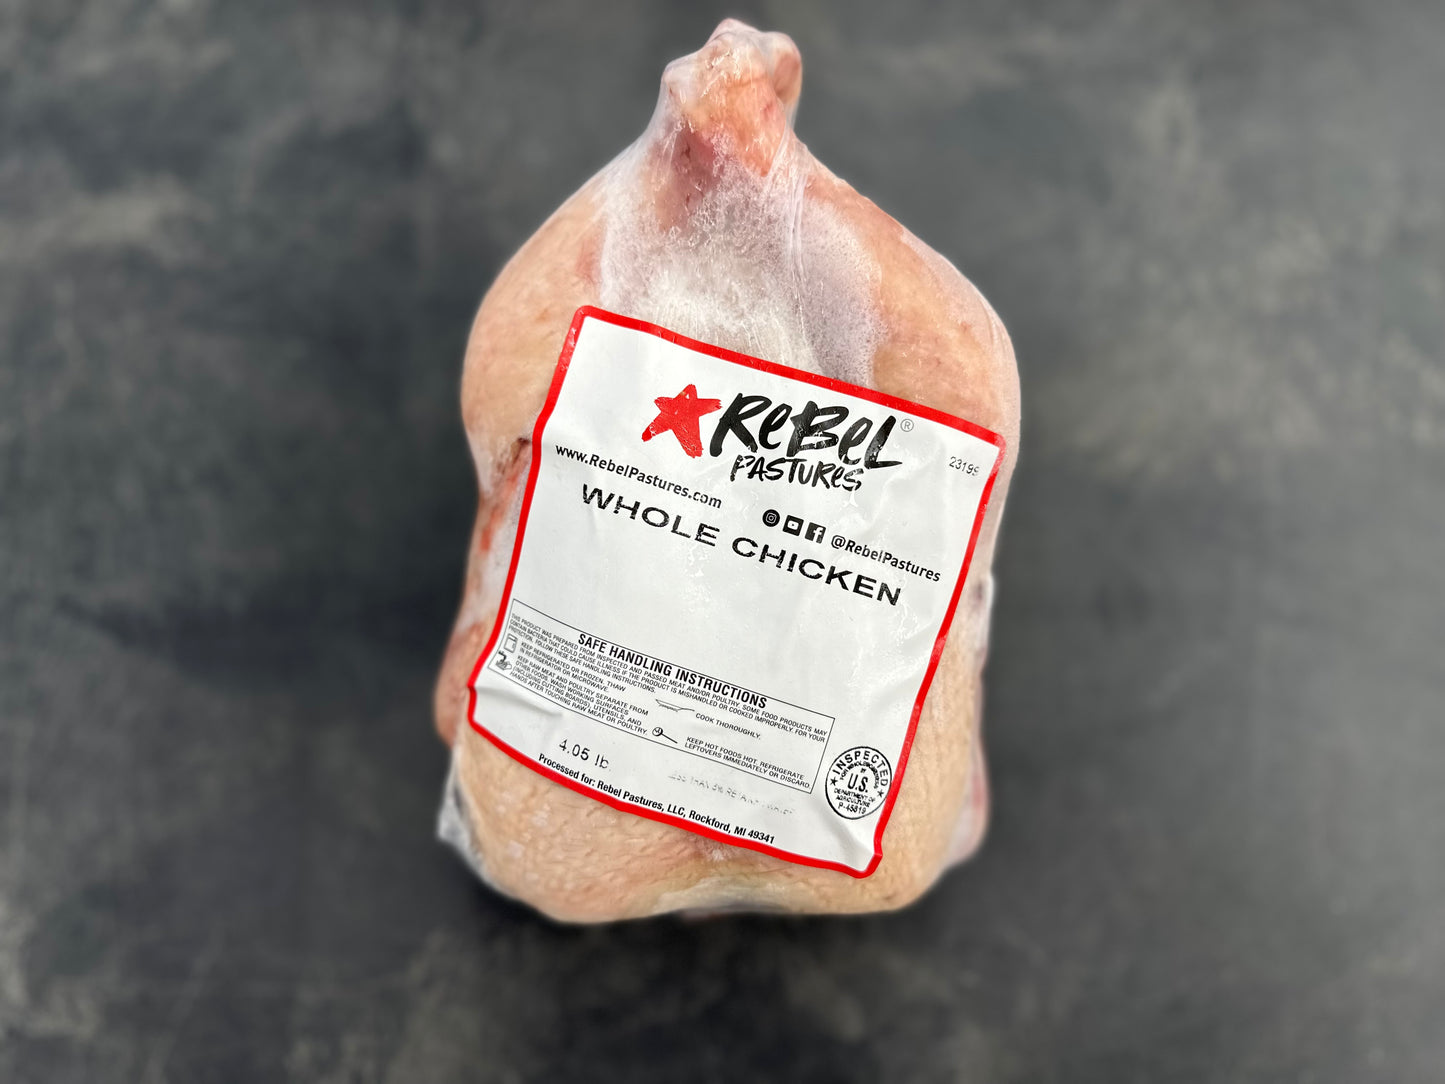 Chicken - Pastured Whole Chicken - Rebel Pastures